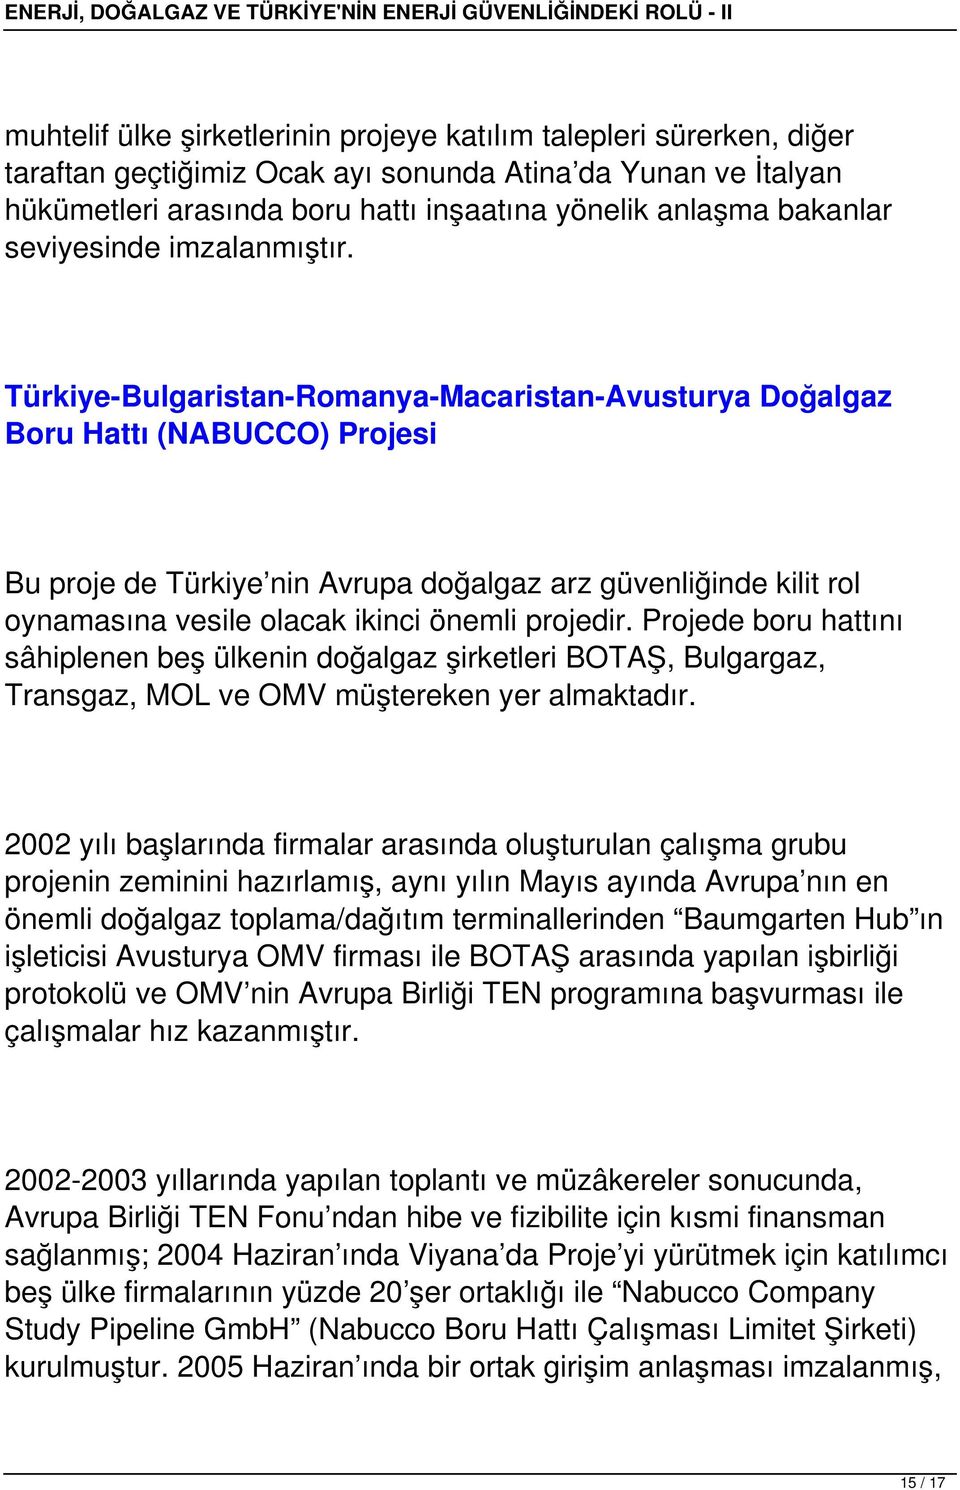 Türkiye-Bulgaristan-Romanya-Macaristan-Avusturya Doğalgaz Boru Hattı (NABUCCO) Projesi Bu proje de Türkiye nin Avrupa doğalgaz arz güvenliğinde kilit rol oynamasına vesile olacak ikinci önemli